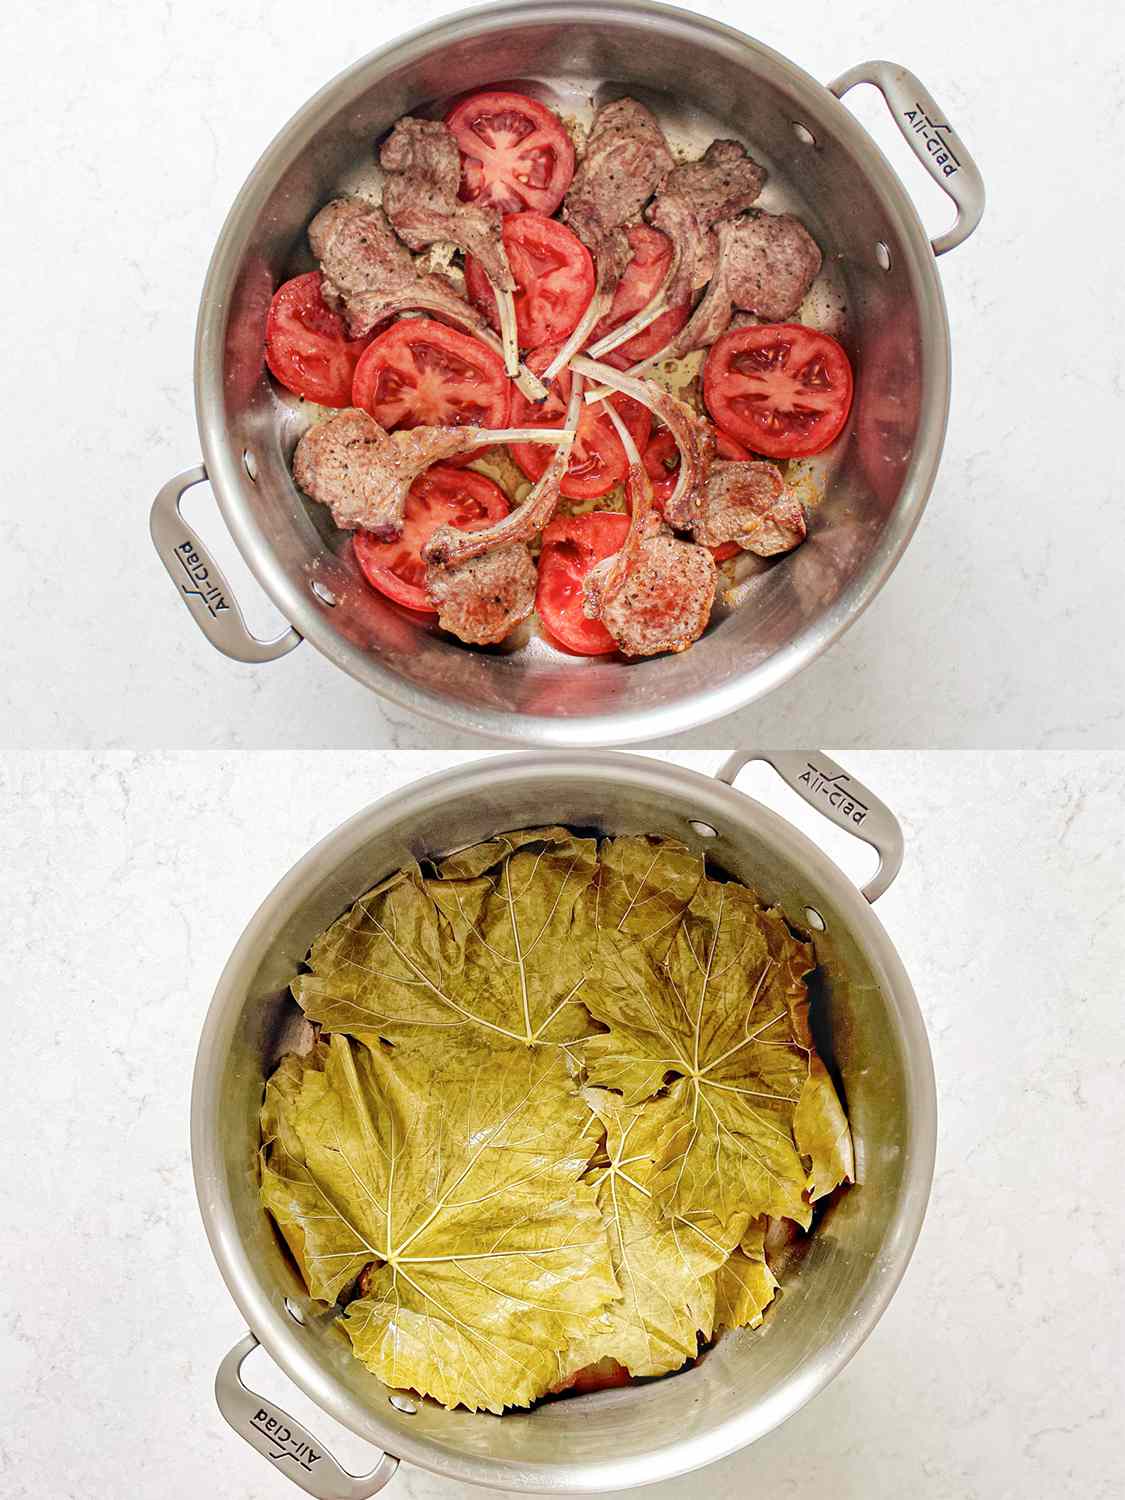 两个图像拼贴。上:羊肉和番茄在锅底分层。下:羊肉和番茄层覆盖葡萄叶